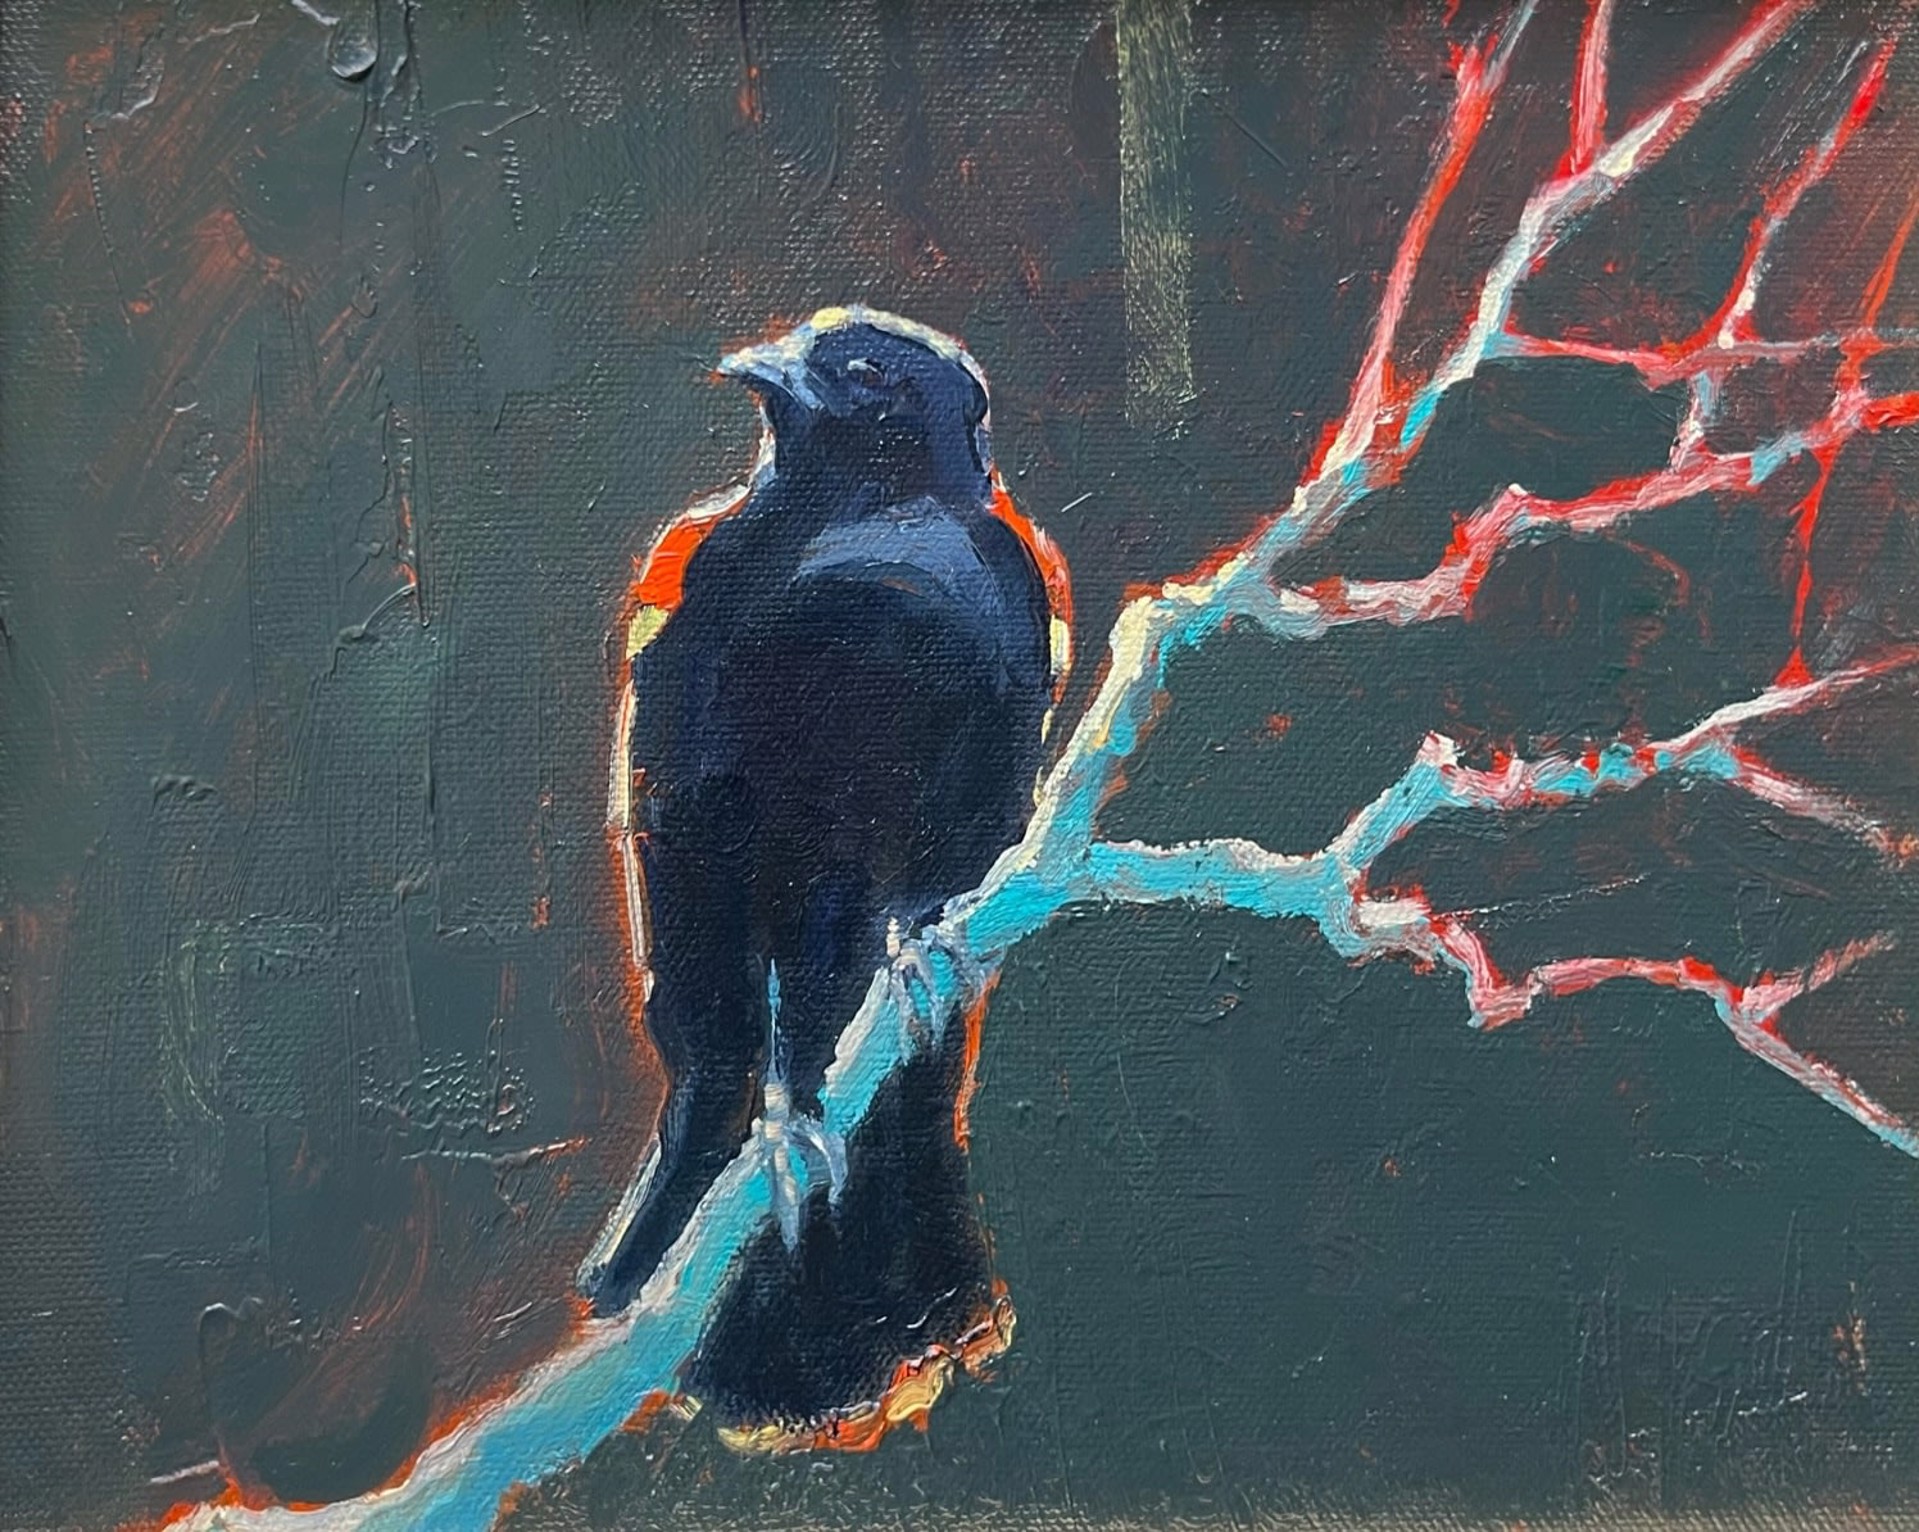 REDWING BLACKBIRD by Stephen Wysocki